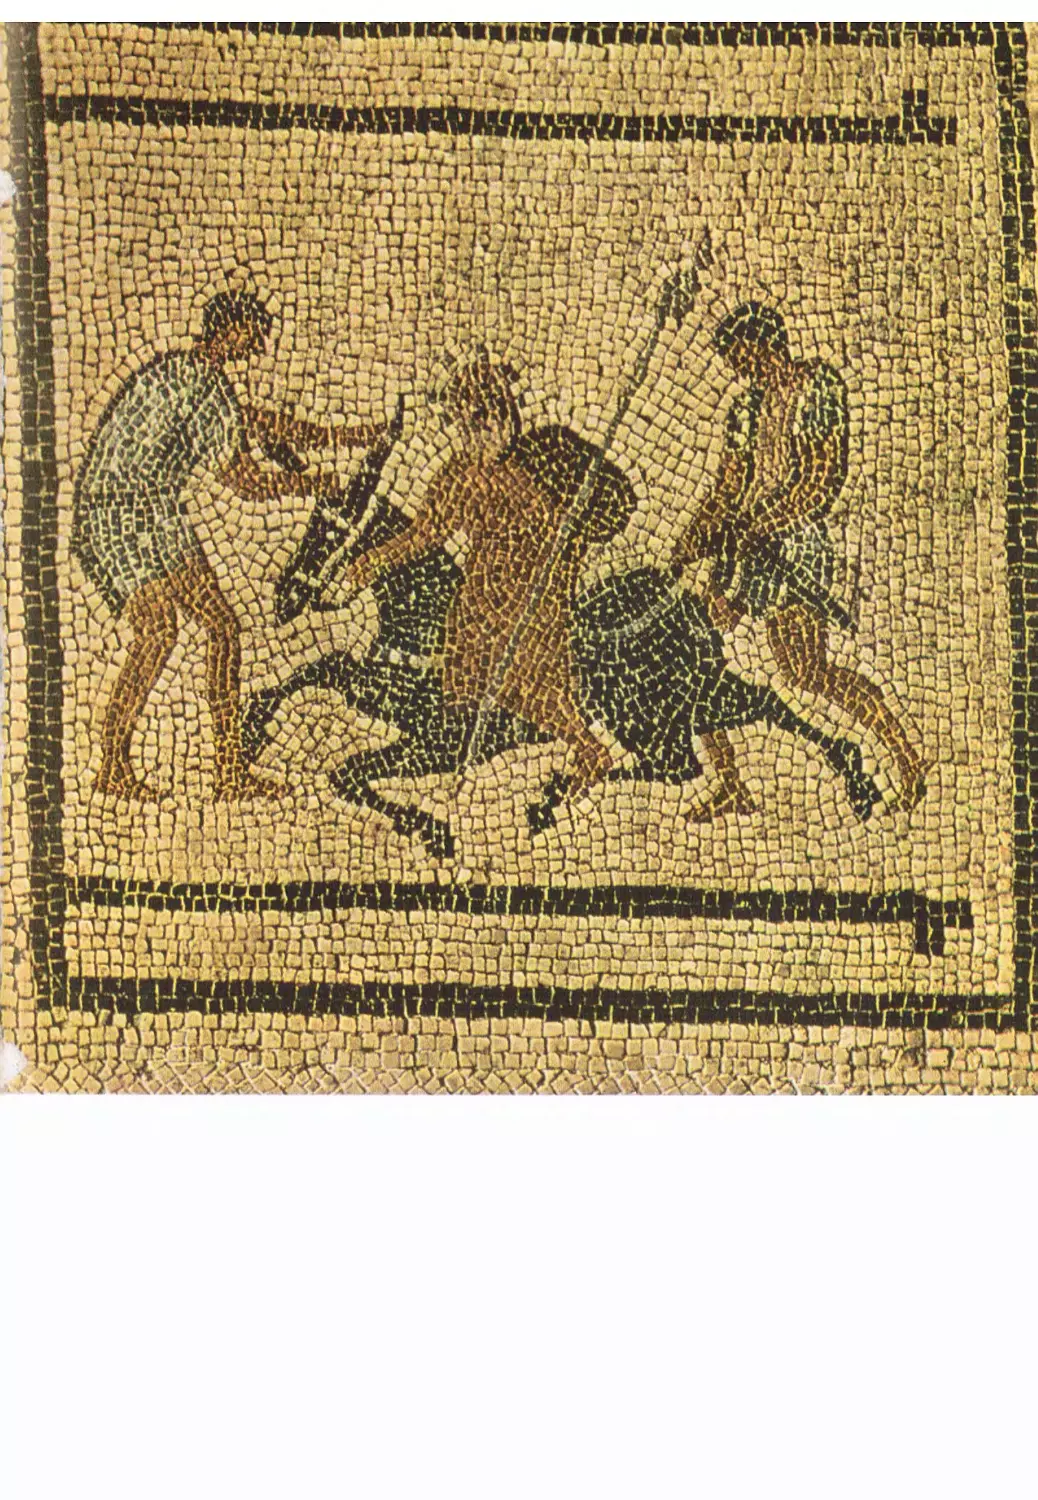 Силен на осле. Мозаика из дома П. Прокула в Помпеях. Неаполь, музей